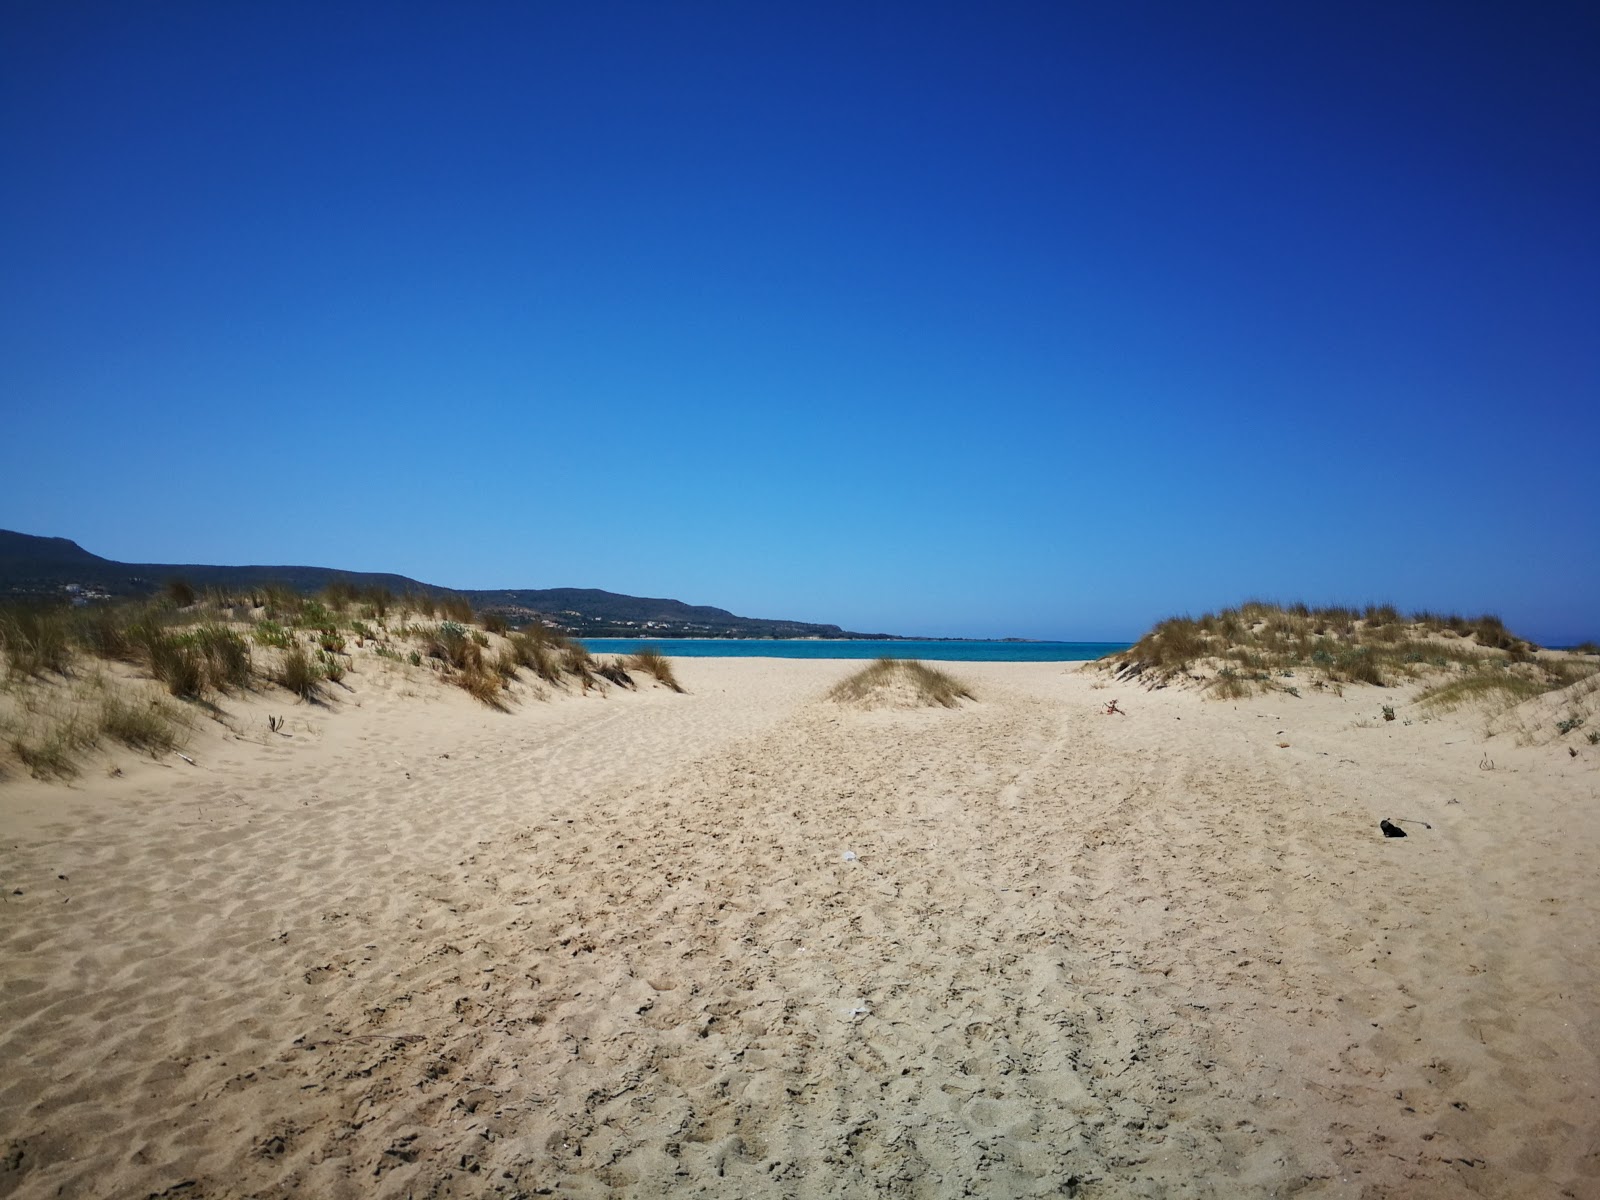 Foto af Pouda beach - populært sted blandt afslapningskendere